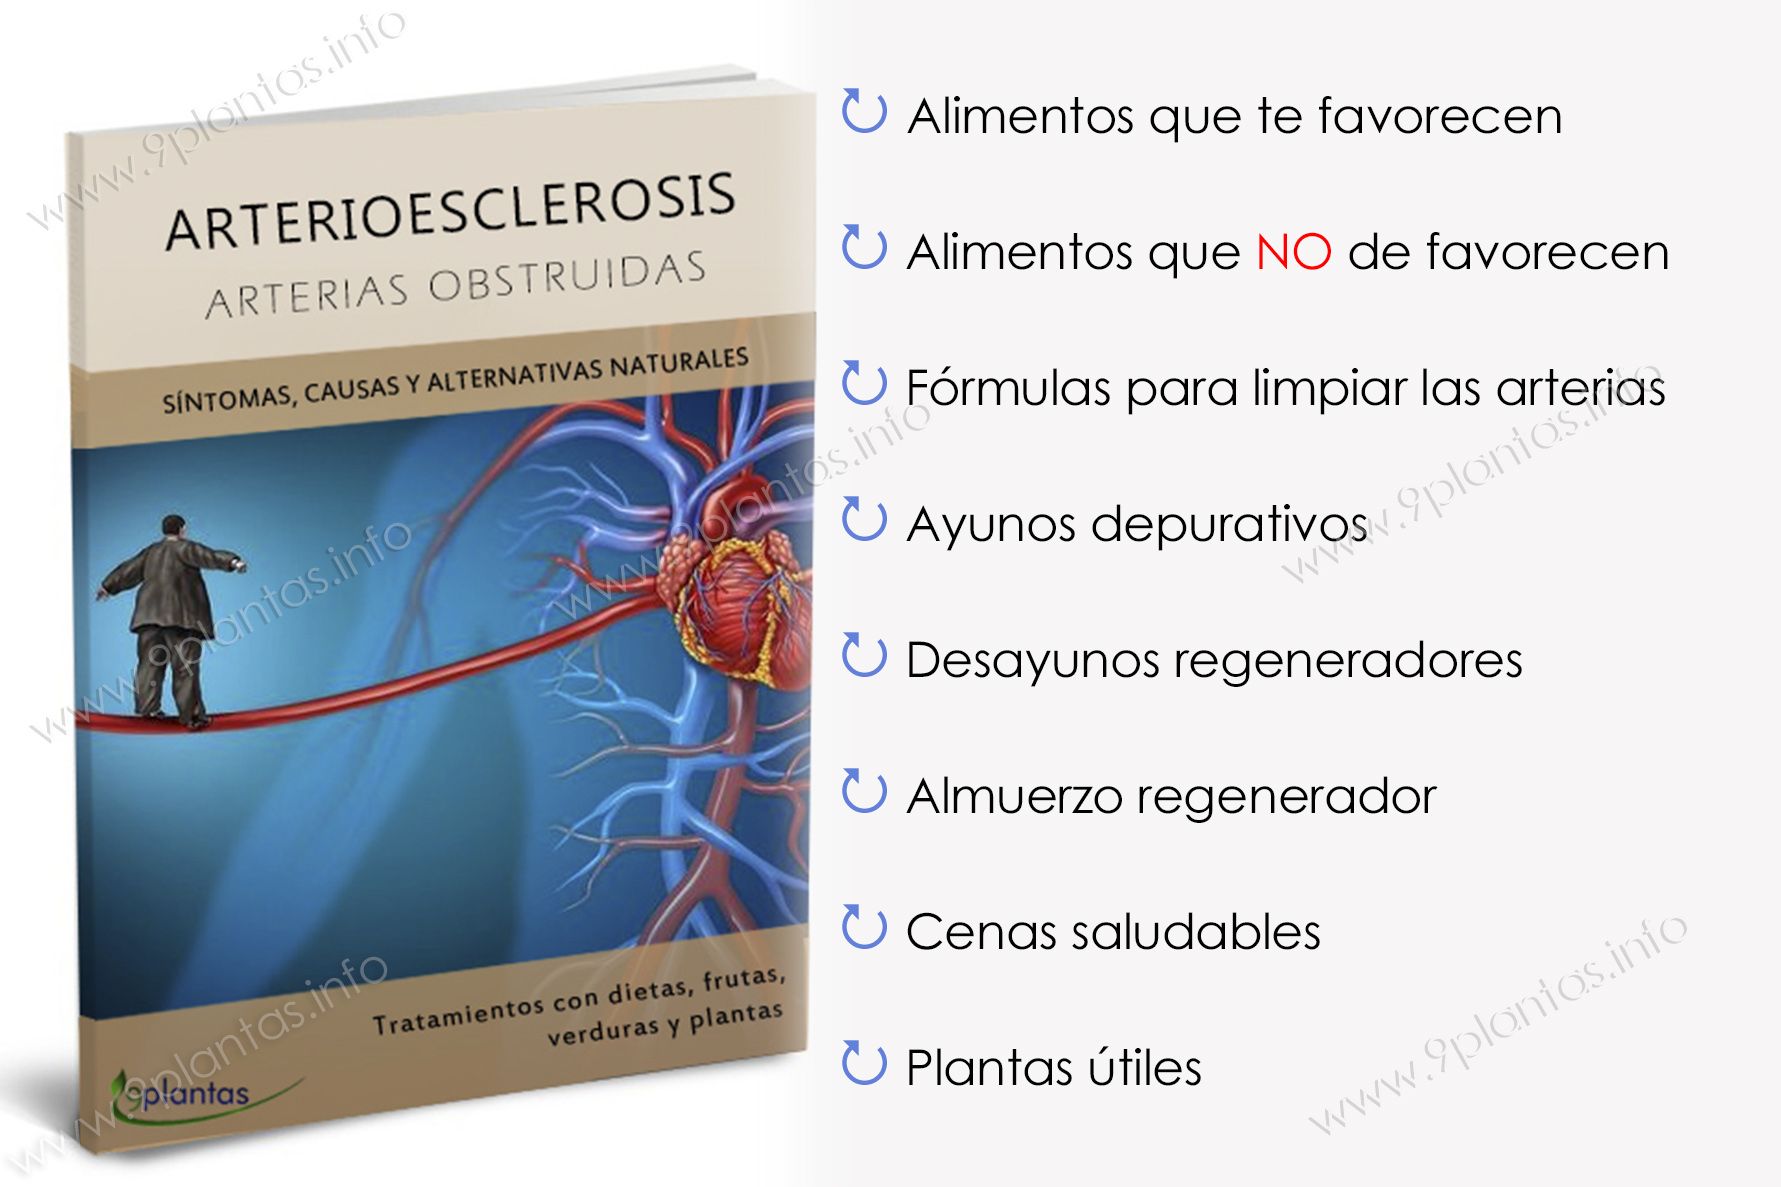 E-book | Arterioesclerosis, arterias obstruidas